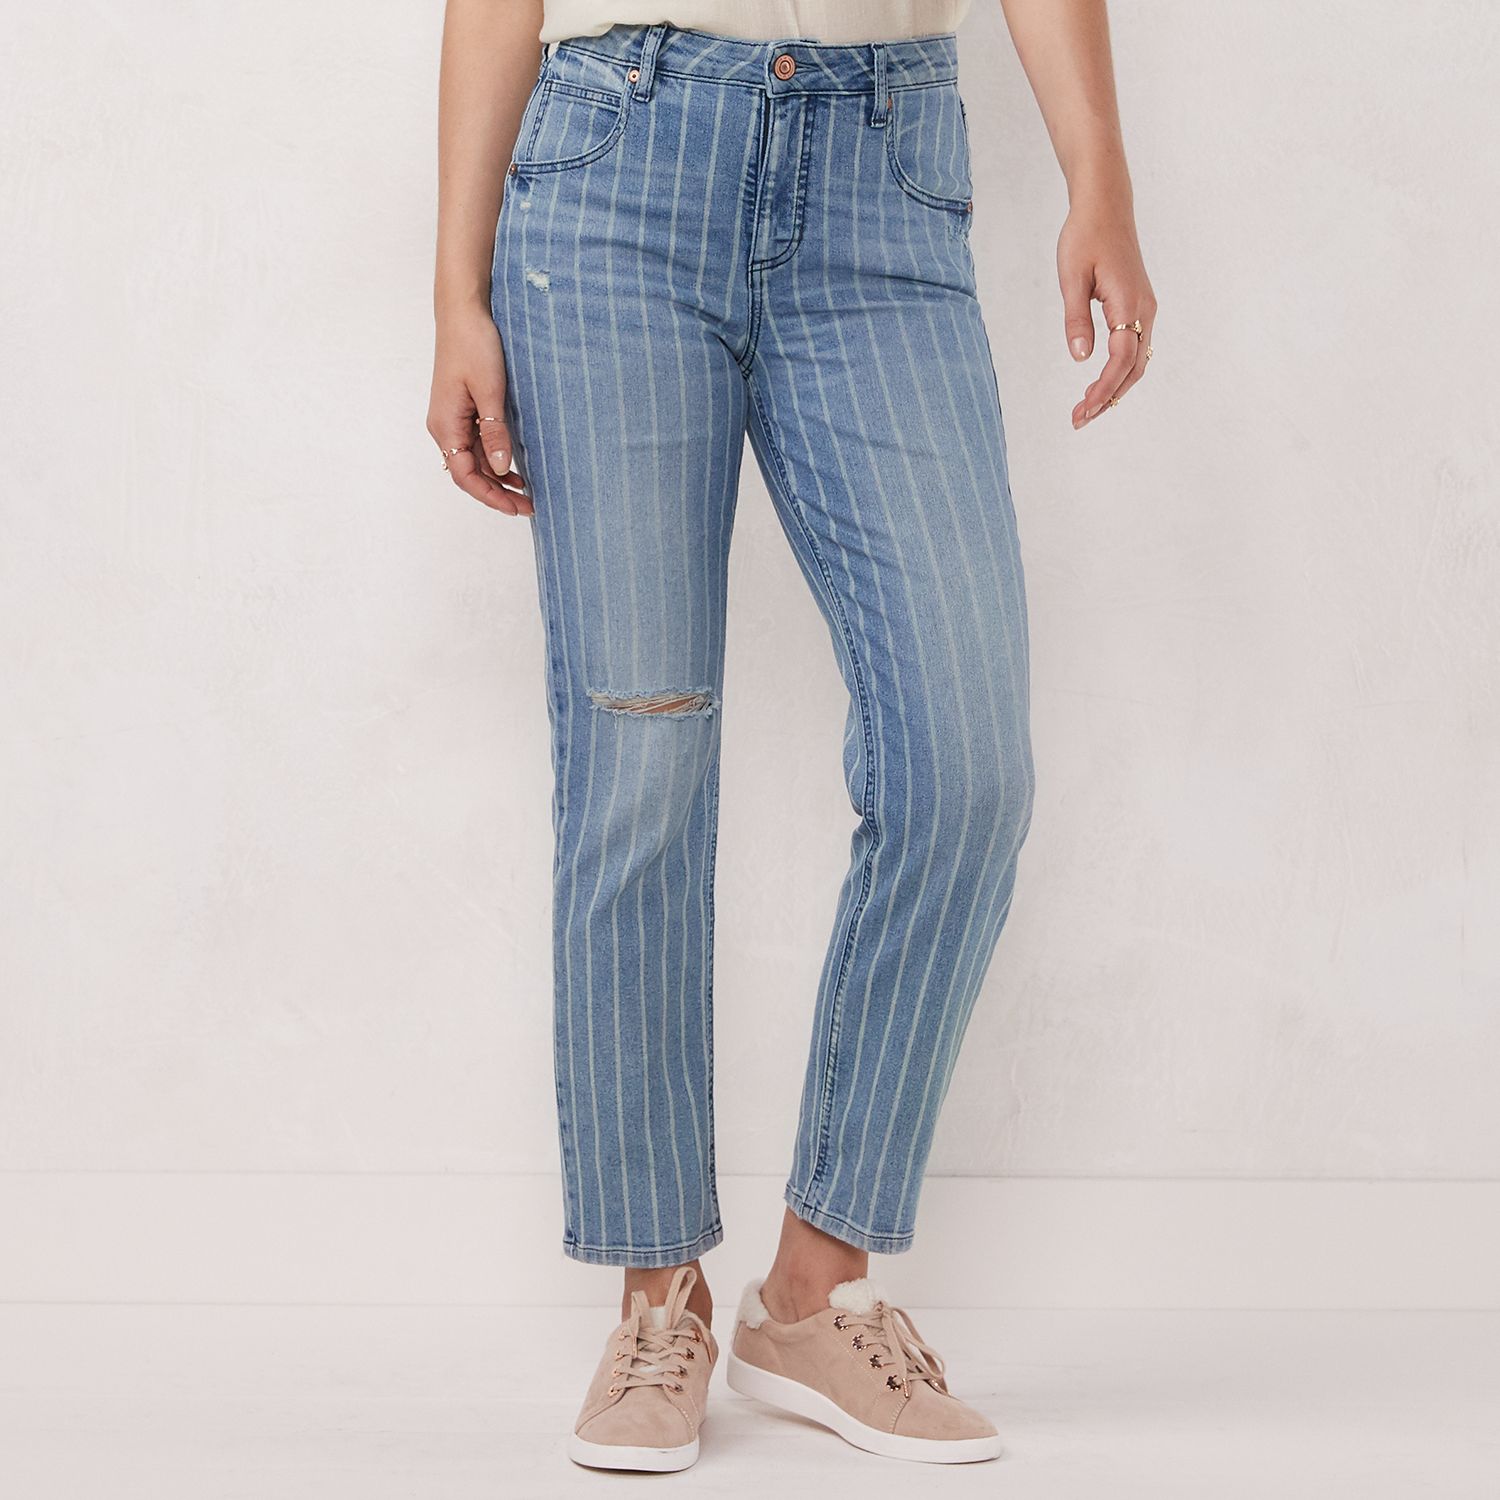 lauren conrad feel good jeans